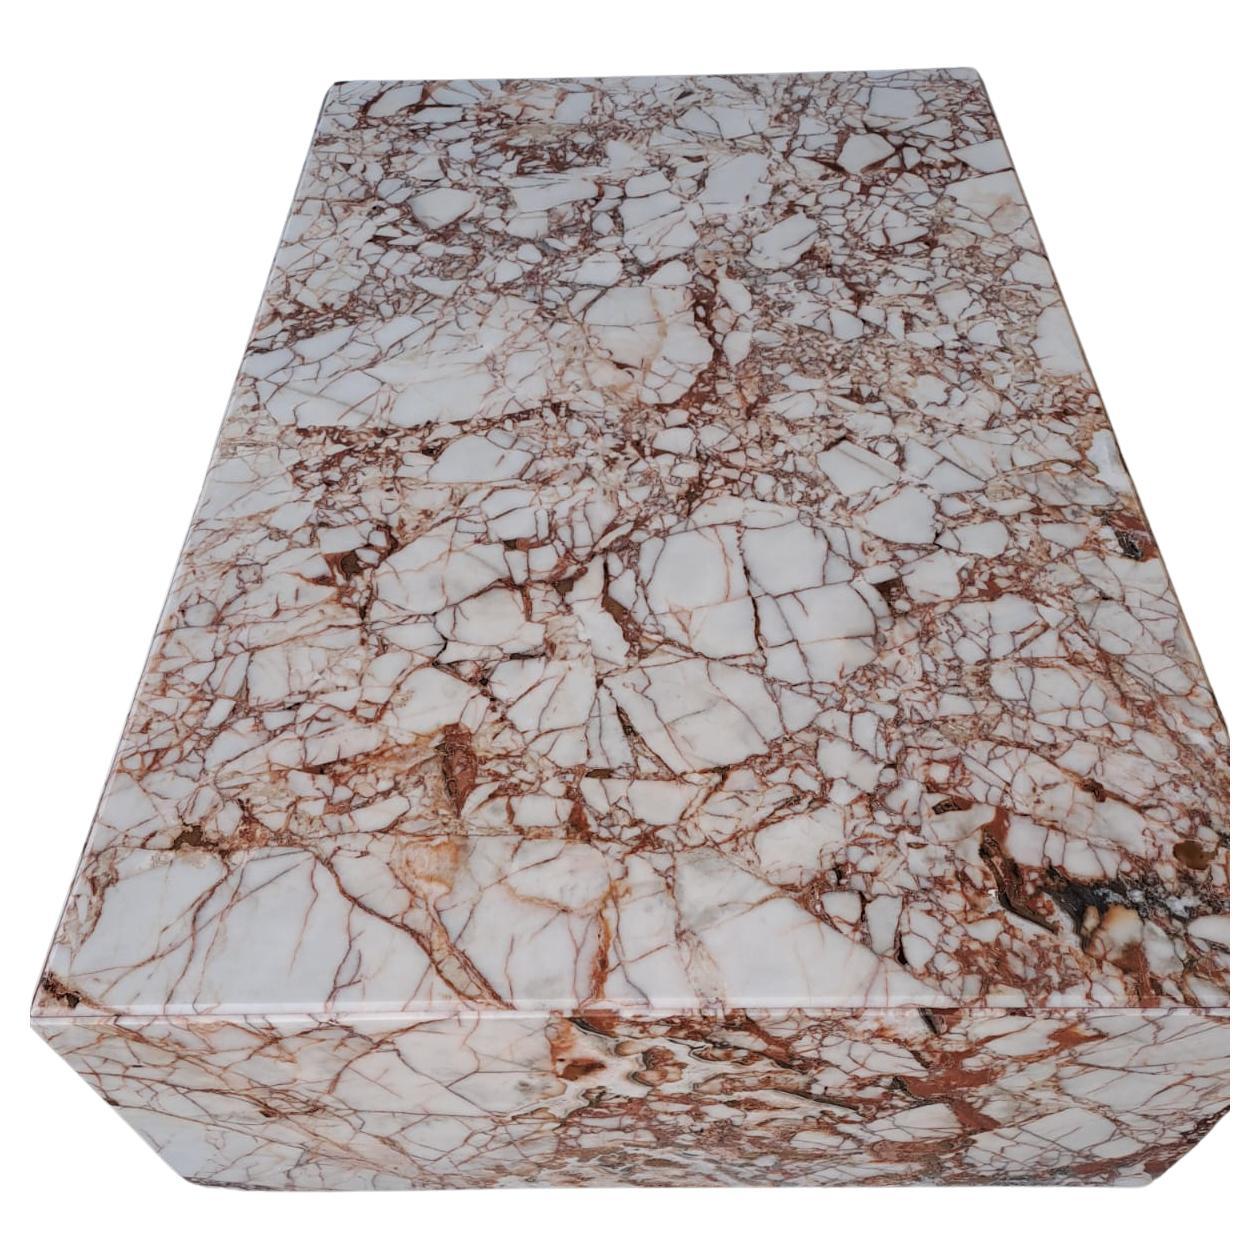 Présentant un chef-d'œuvre de design et la beauté de la nature, notre table basse en marbre Calacatta Viola est un véritable témoignage d'élégance et d'artisanat. Cette table exquise combine sans effort la pureté sereine du marbre Calacatta Viola